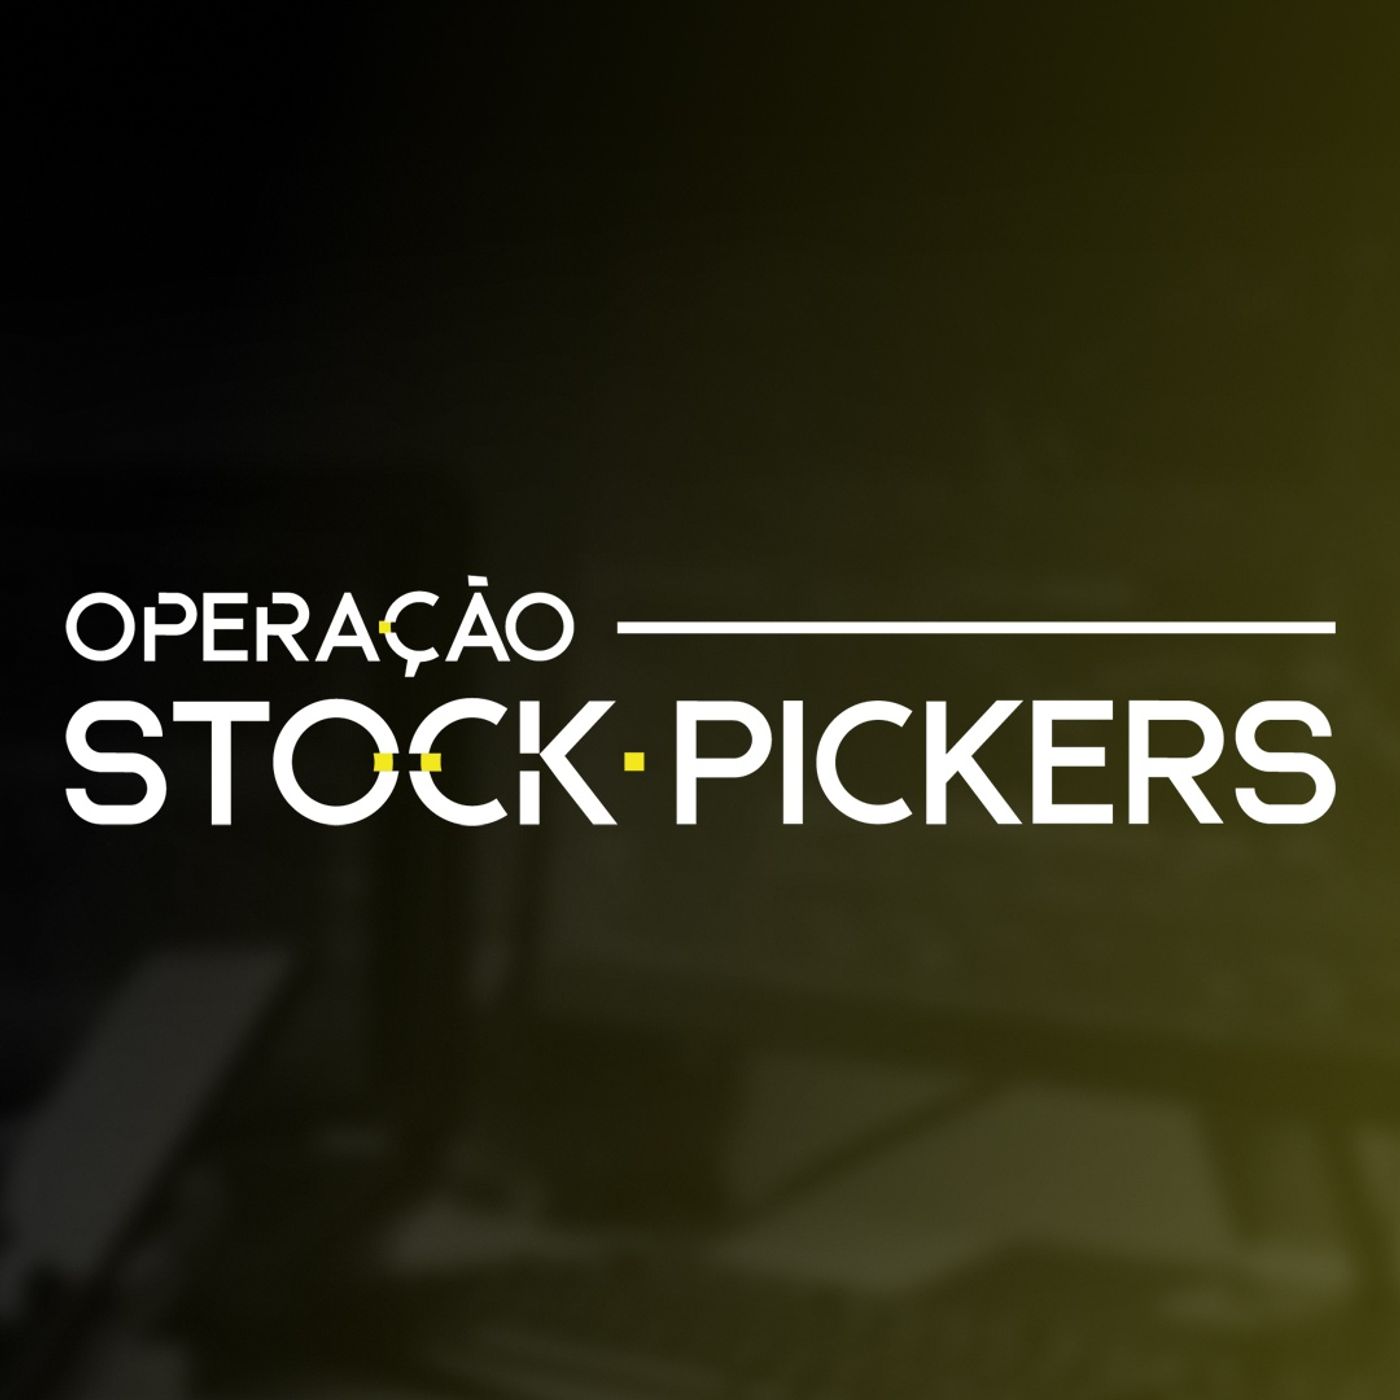 Operação Stock Pickers: Stock Picking e a oportunidade que existe no mercado